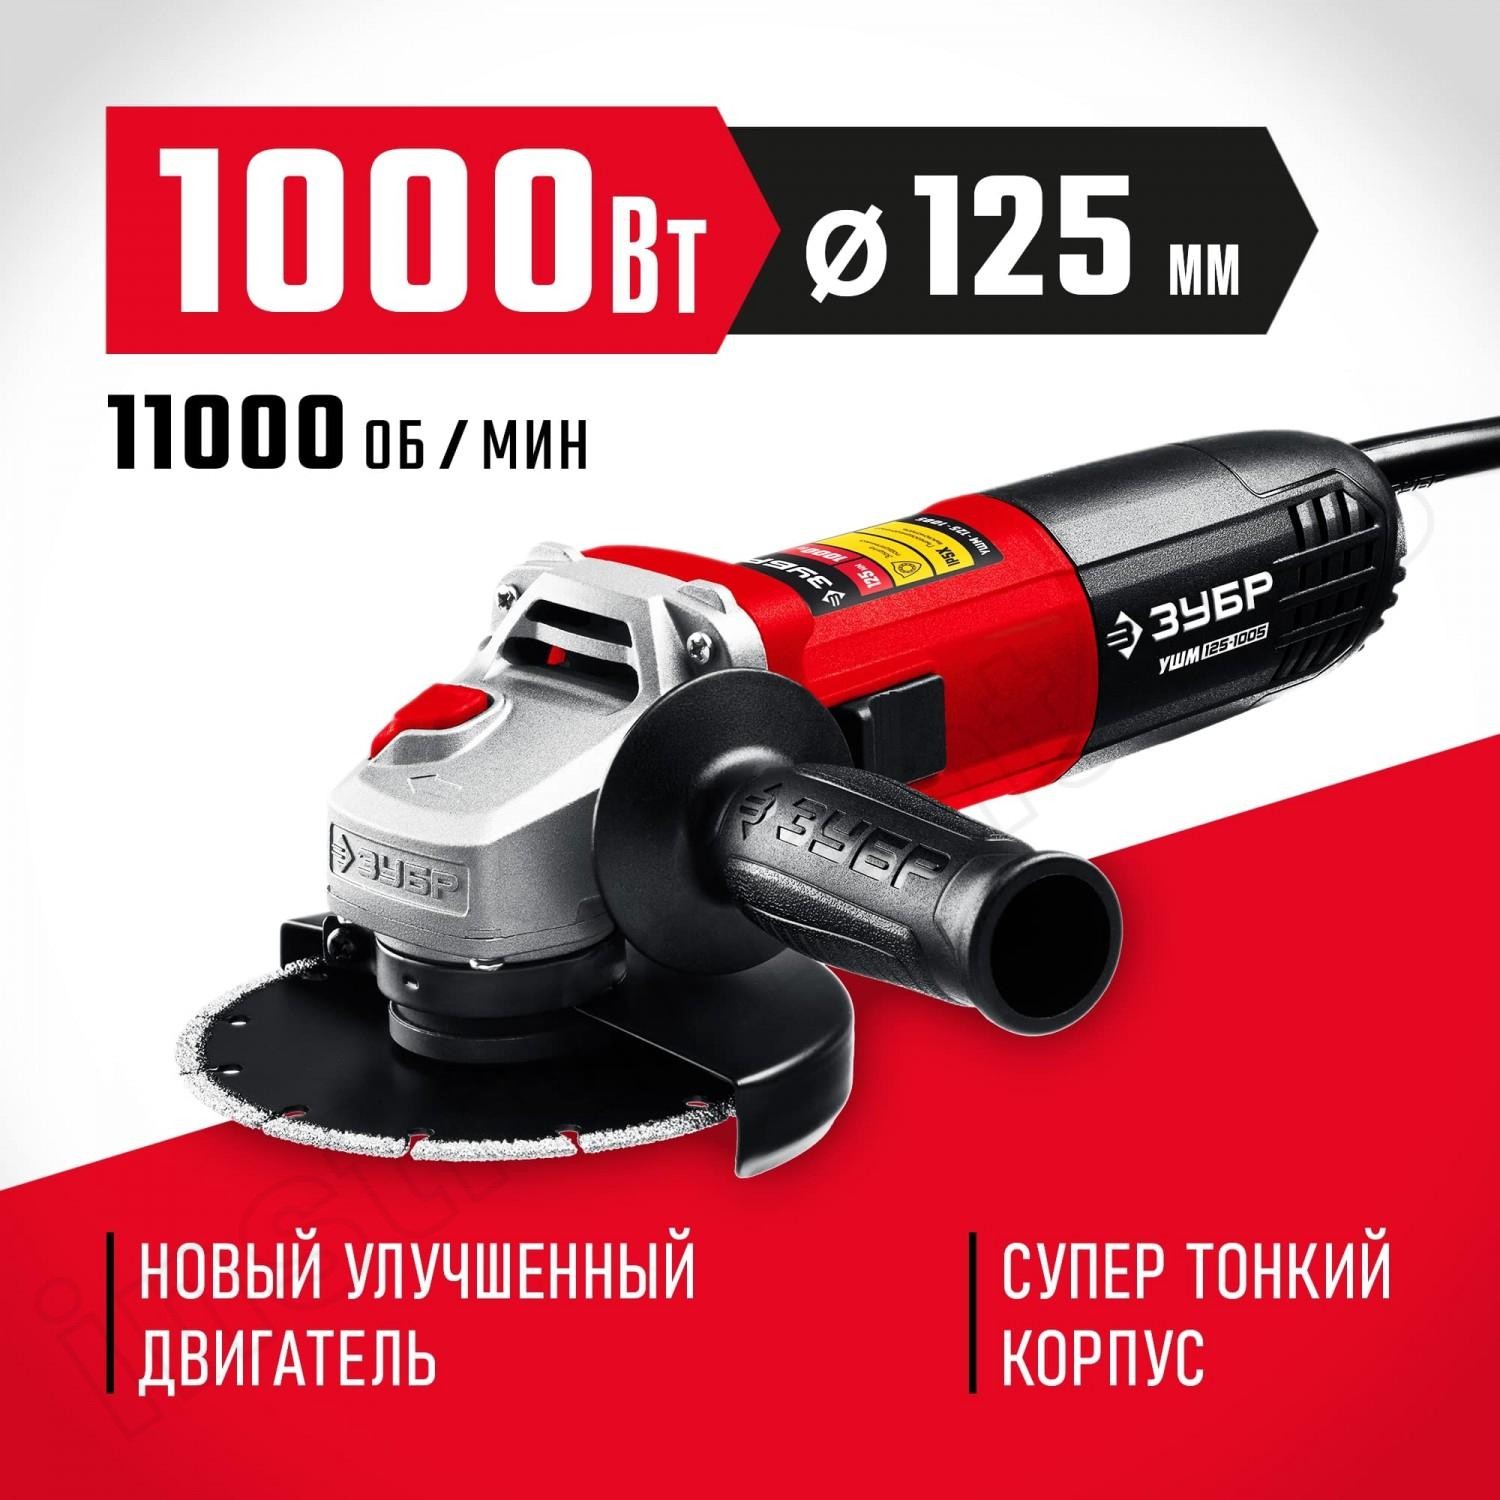 ЗУБР 1000 Вт, 125 мм, углошлифовальная машина (болгарка) УШМ-125-1005 Мастер - фото 1